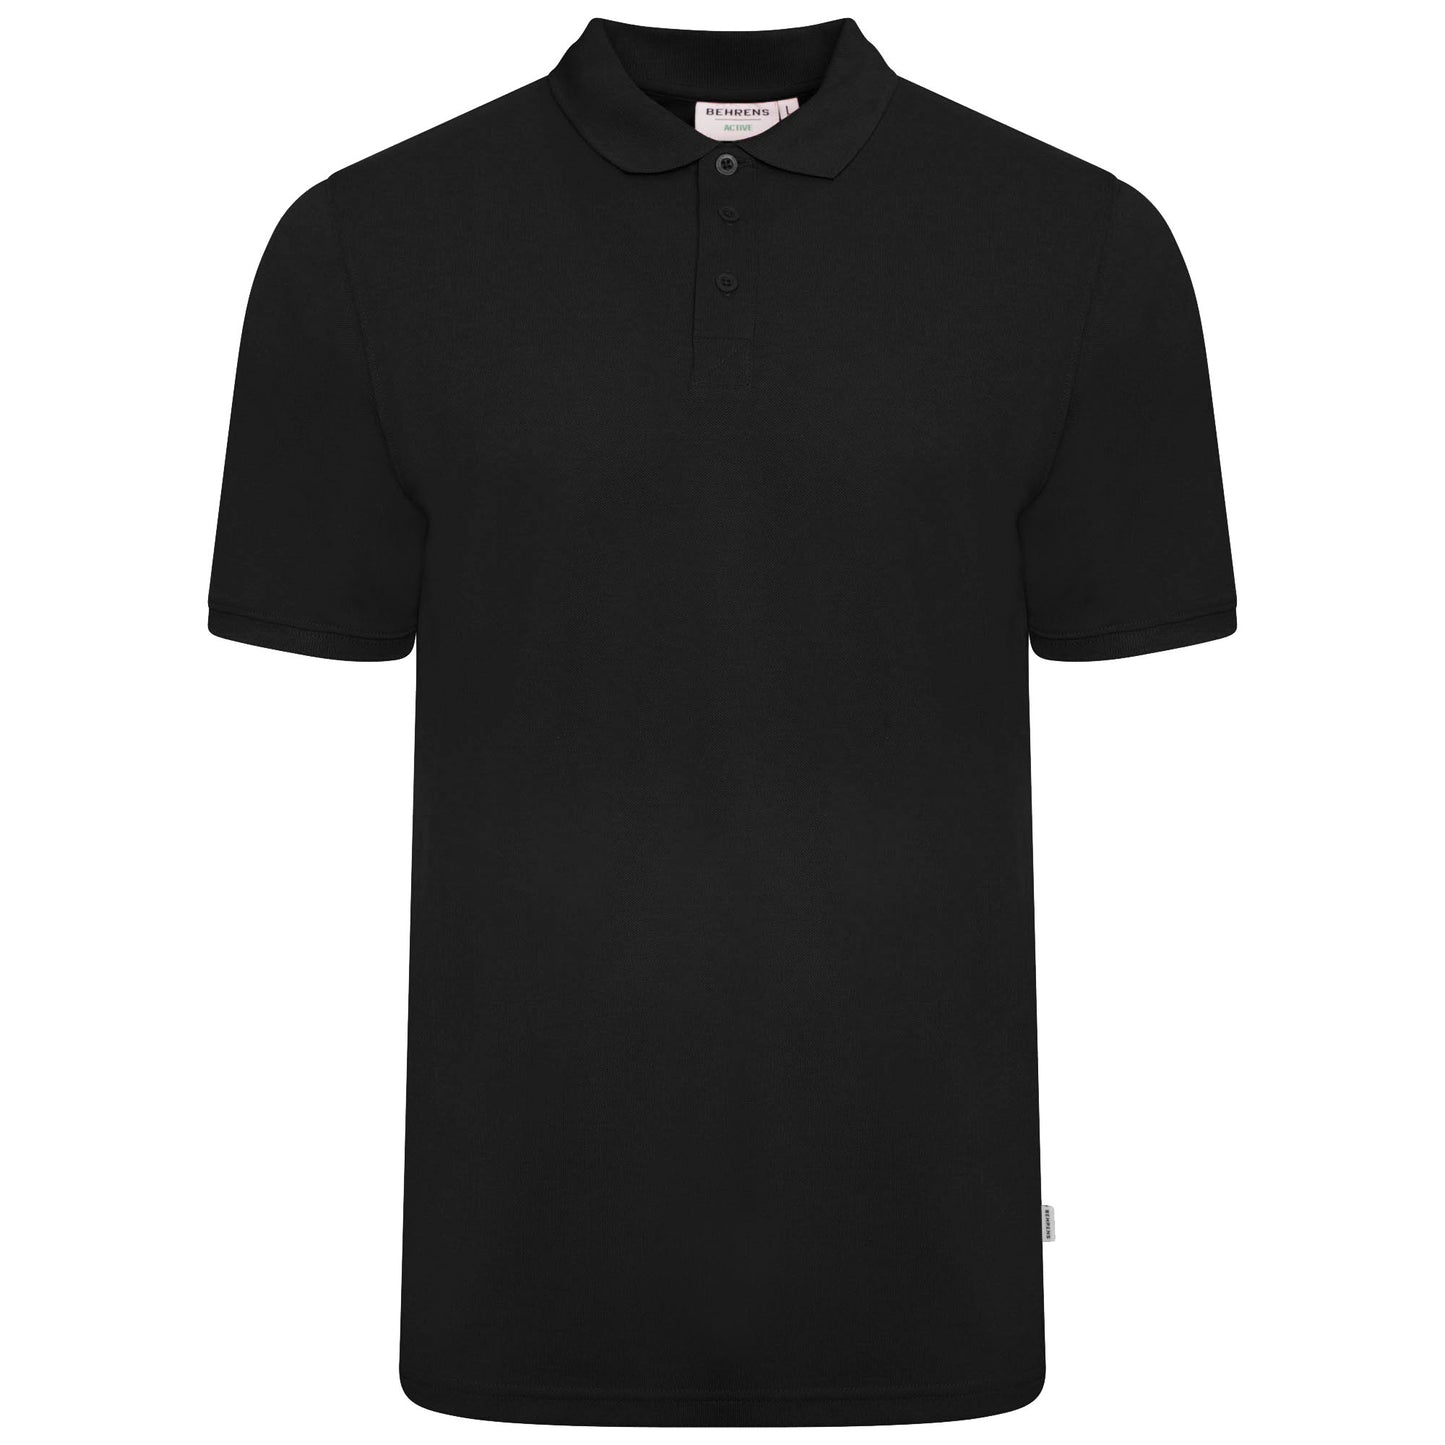 Behrens Mens Pique Polo Shirt - BEH-3522M - Black - X Small